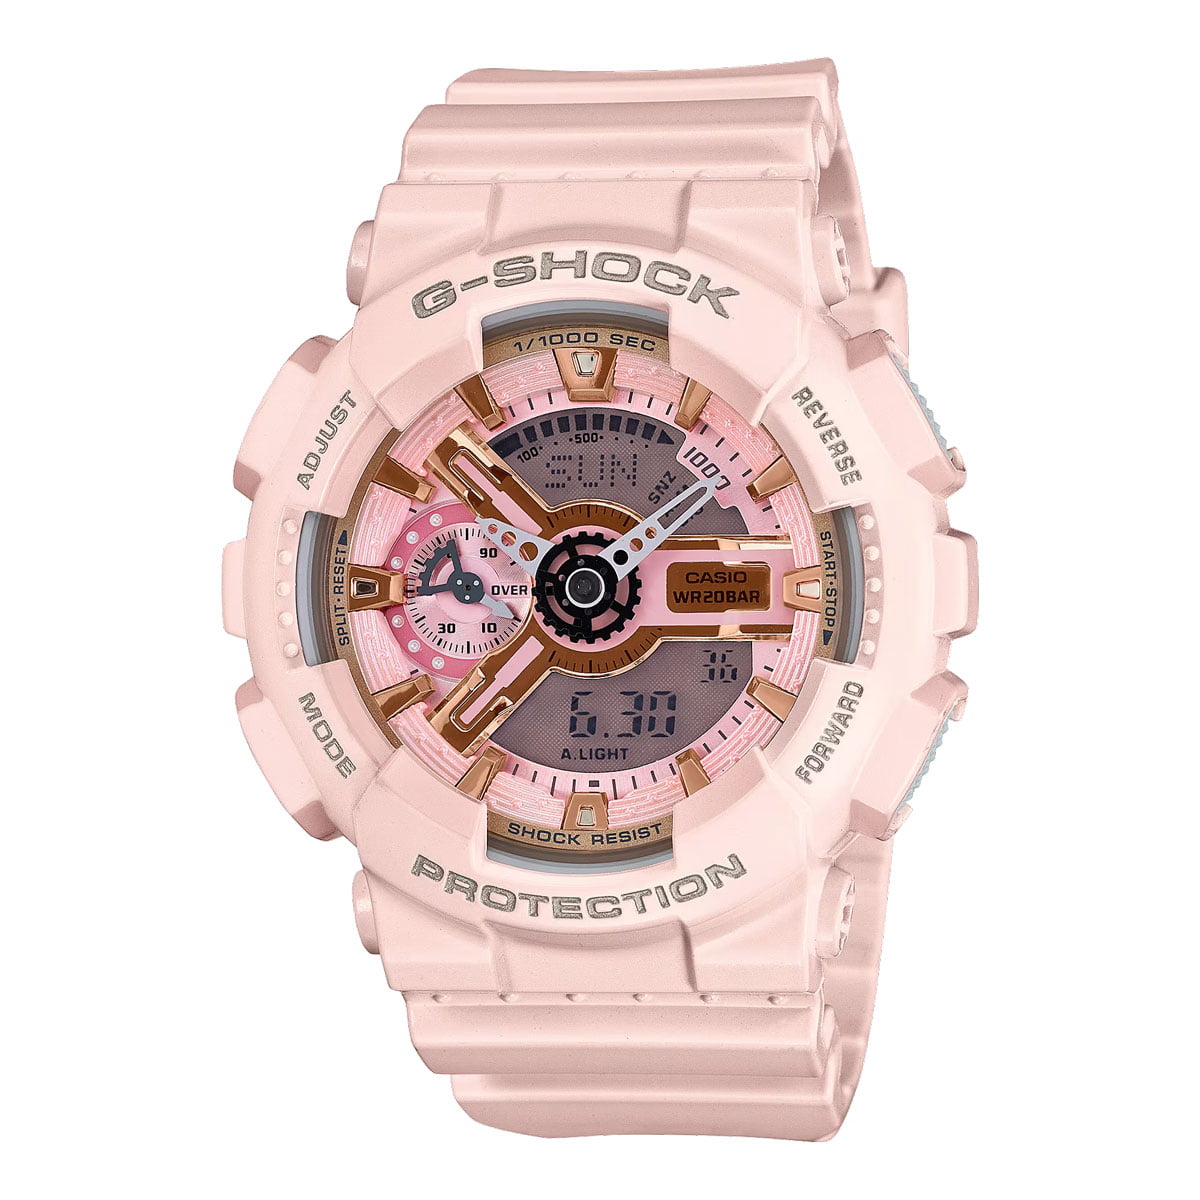 Đồng hồ G-Shock nữ GMA-S110MP- 4A1